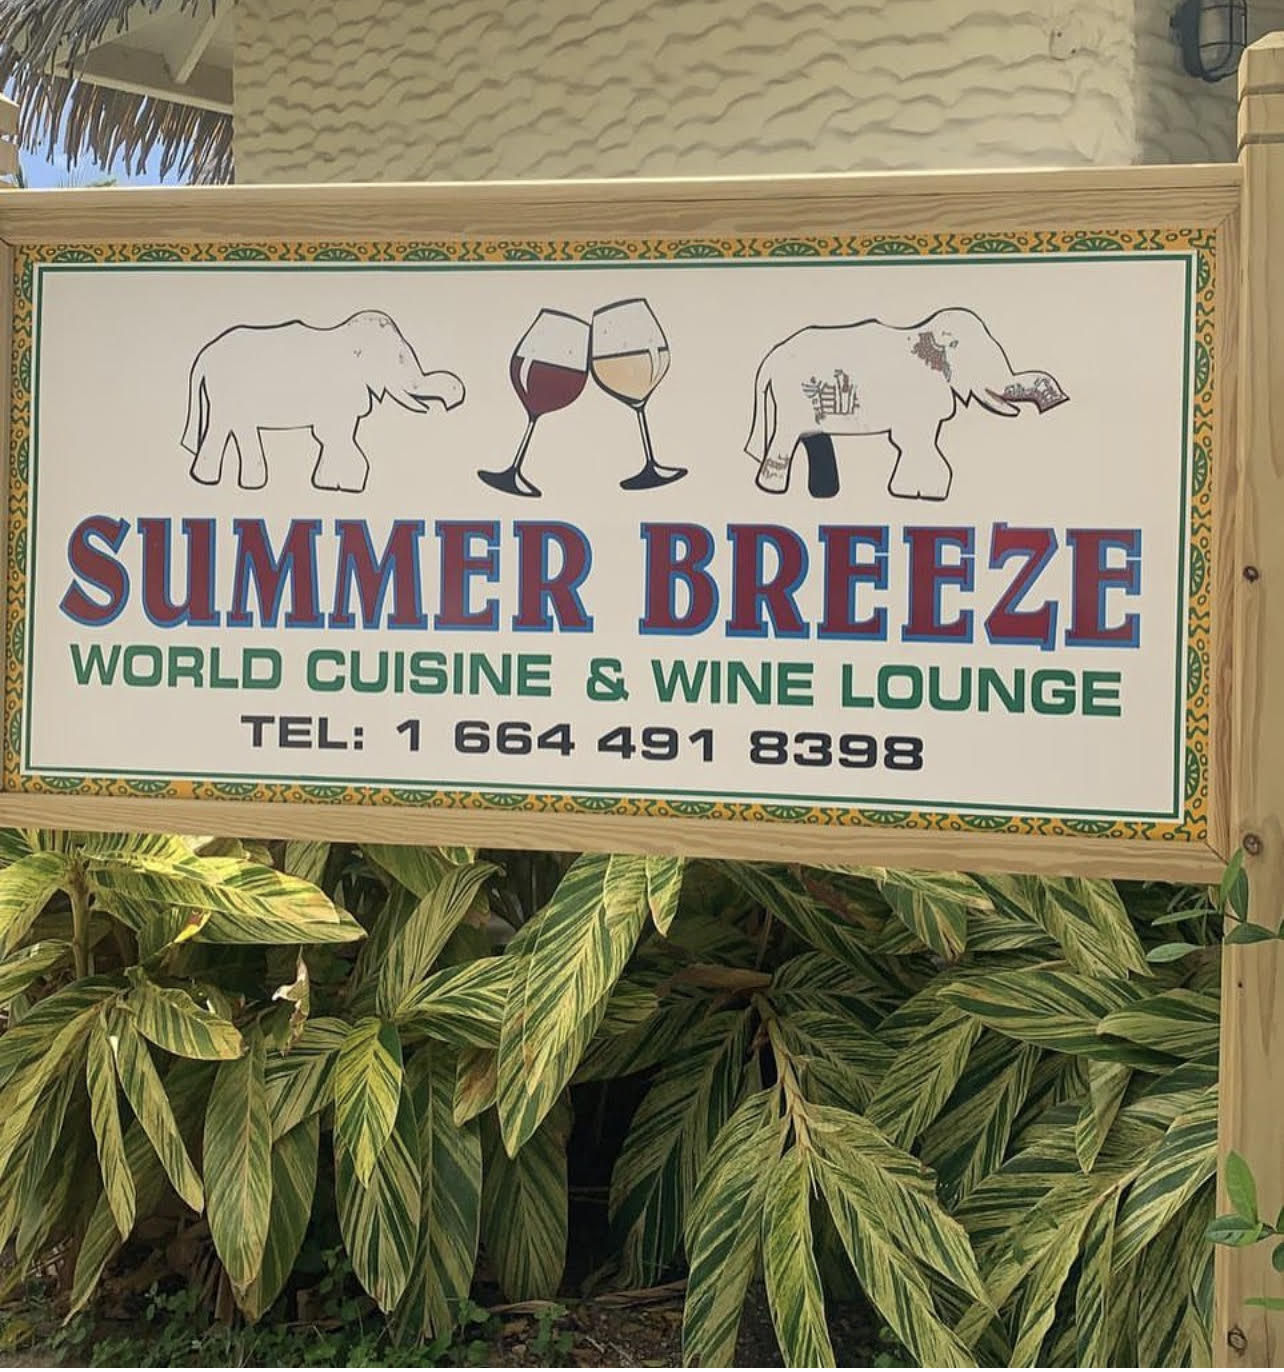 Summer Breeze Wine Lounge & Cuisine